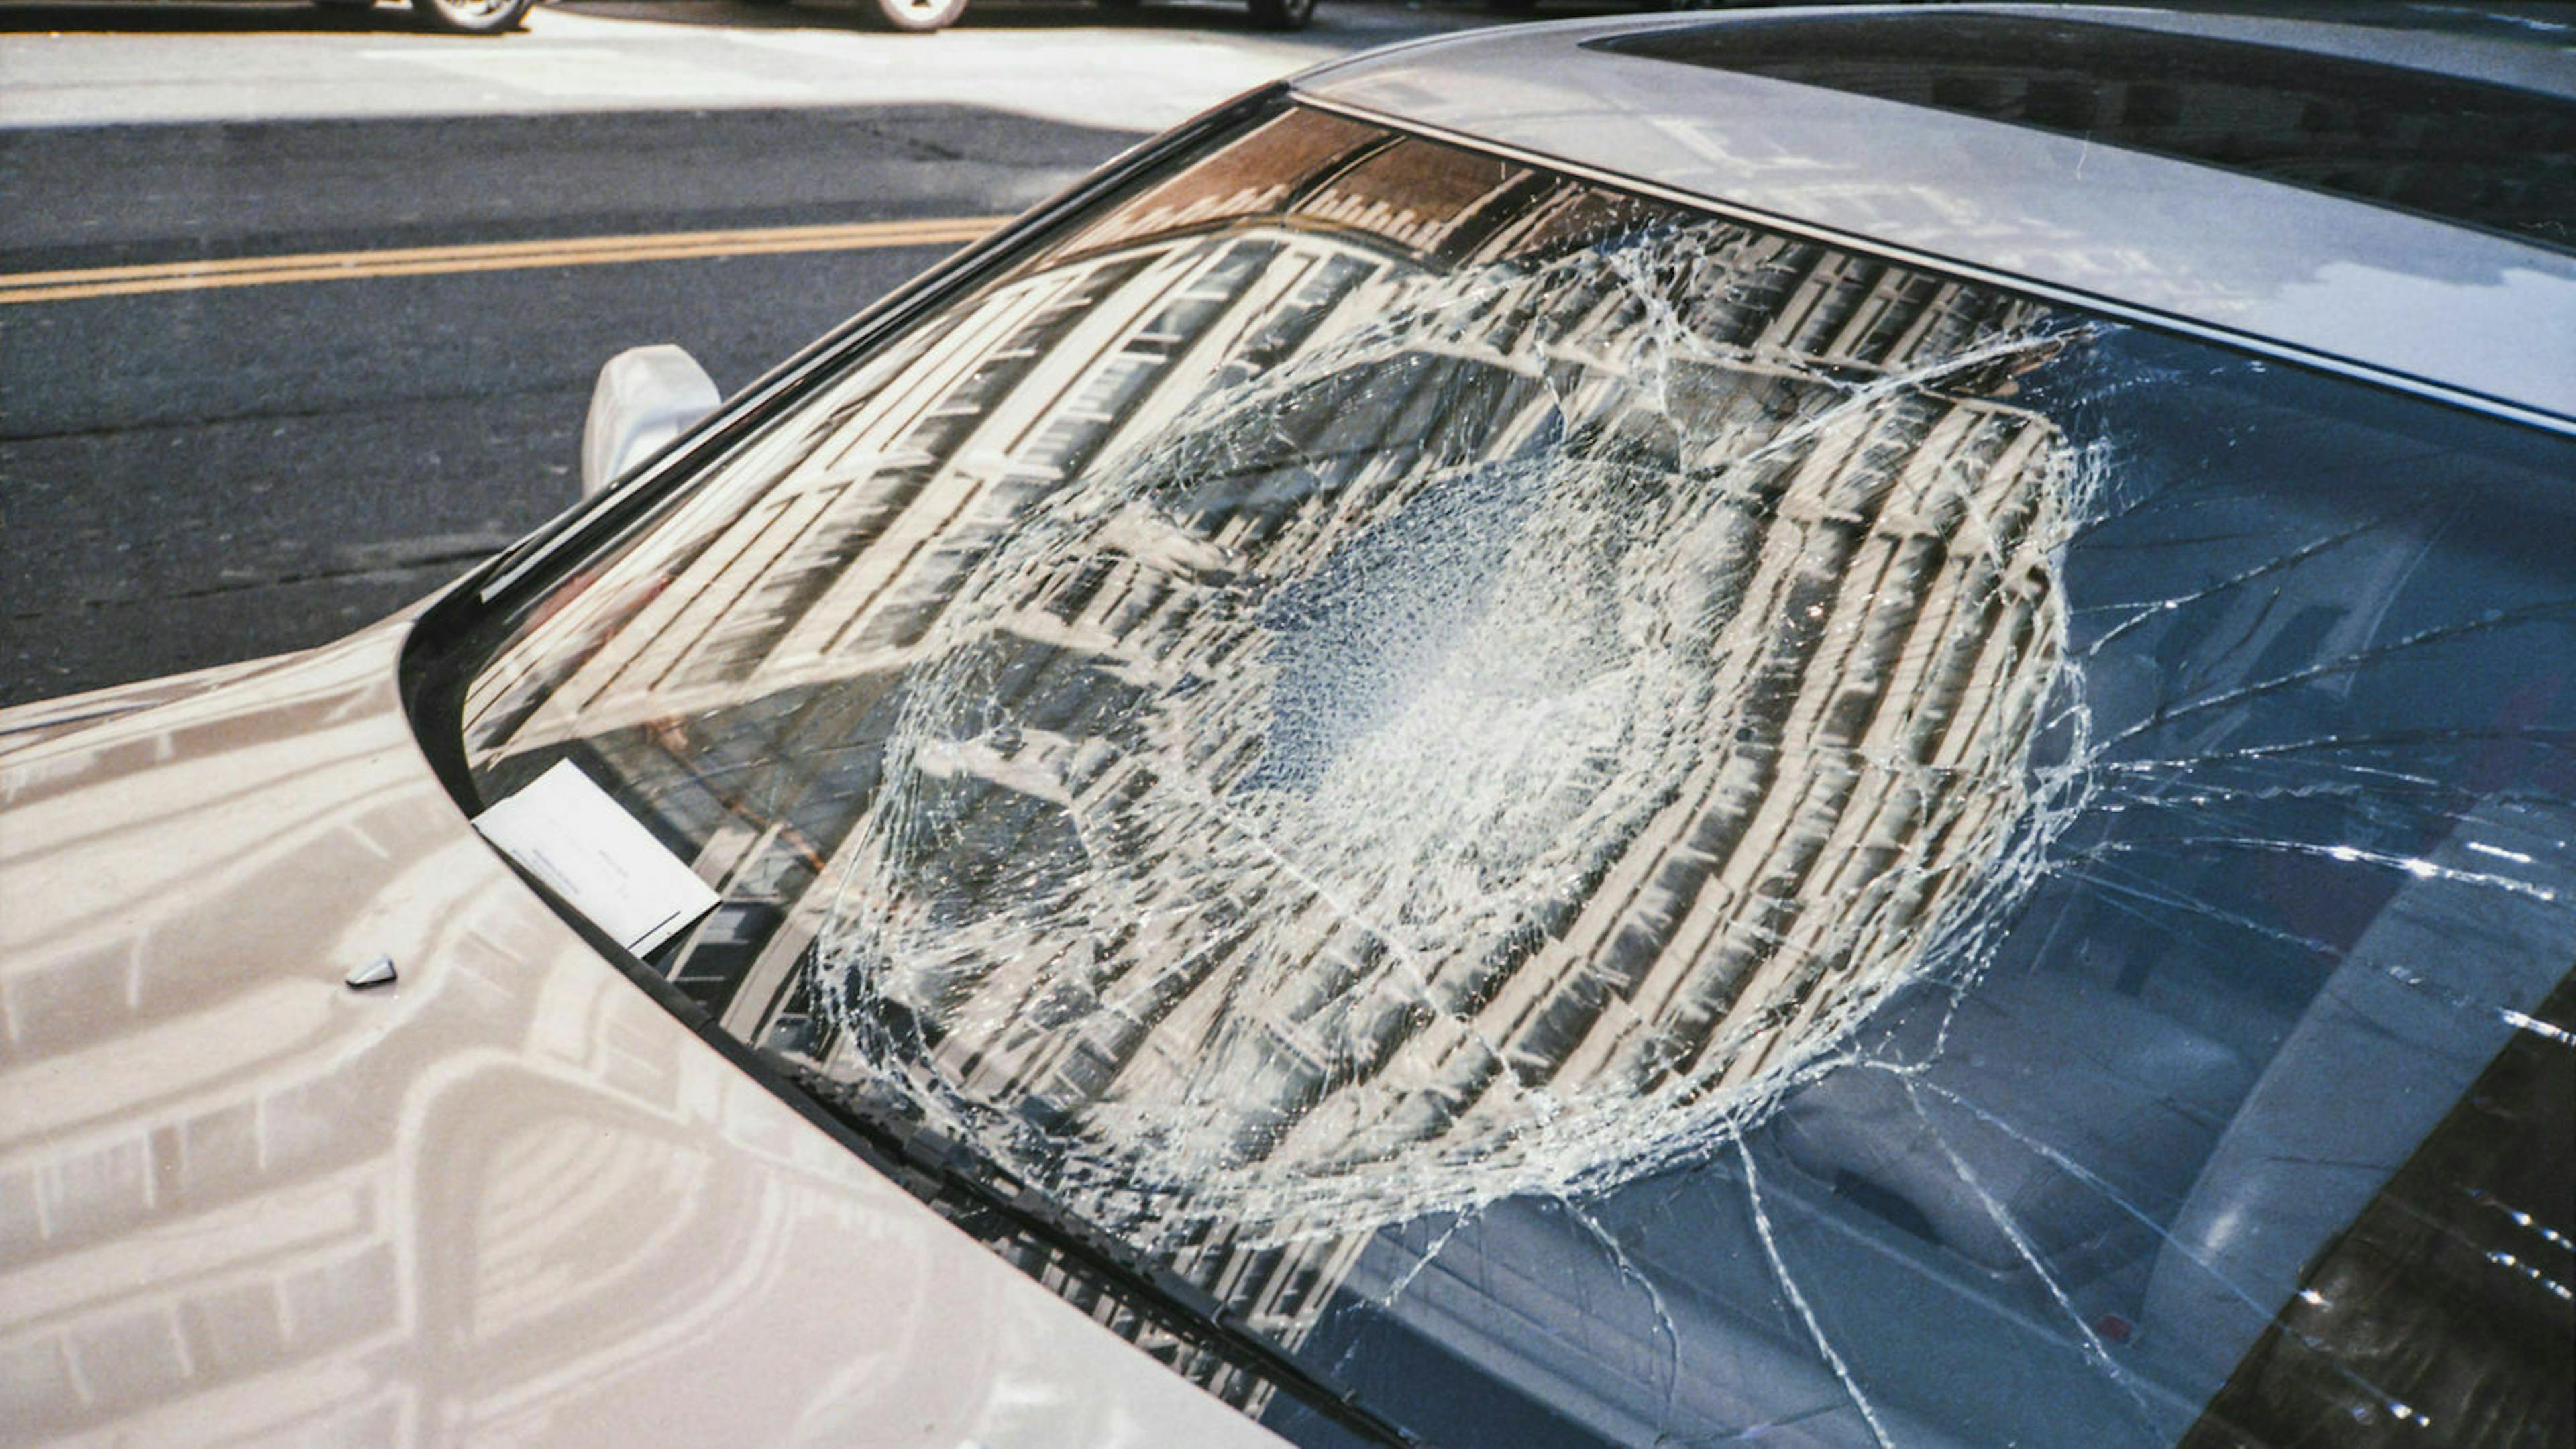 Eine Autoscheibe wurde mittig zerstört und muss ersetzt werden – ein Fall für die Versicherung